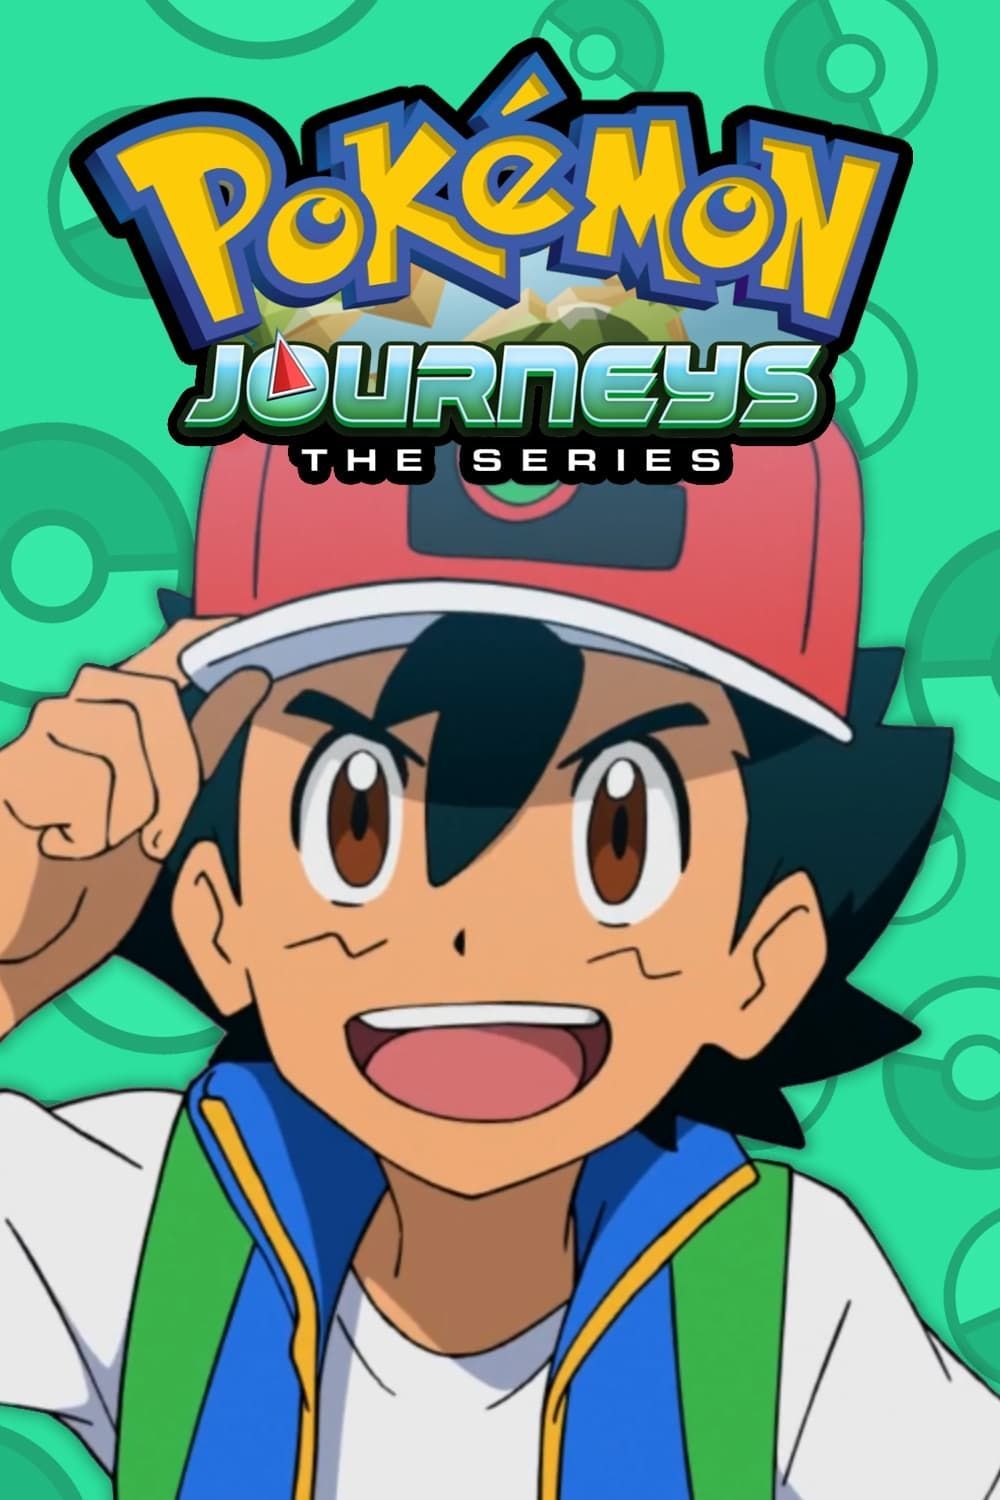 Pokémon Journeys: The Series Season 1 - episodes streaming online